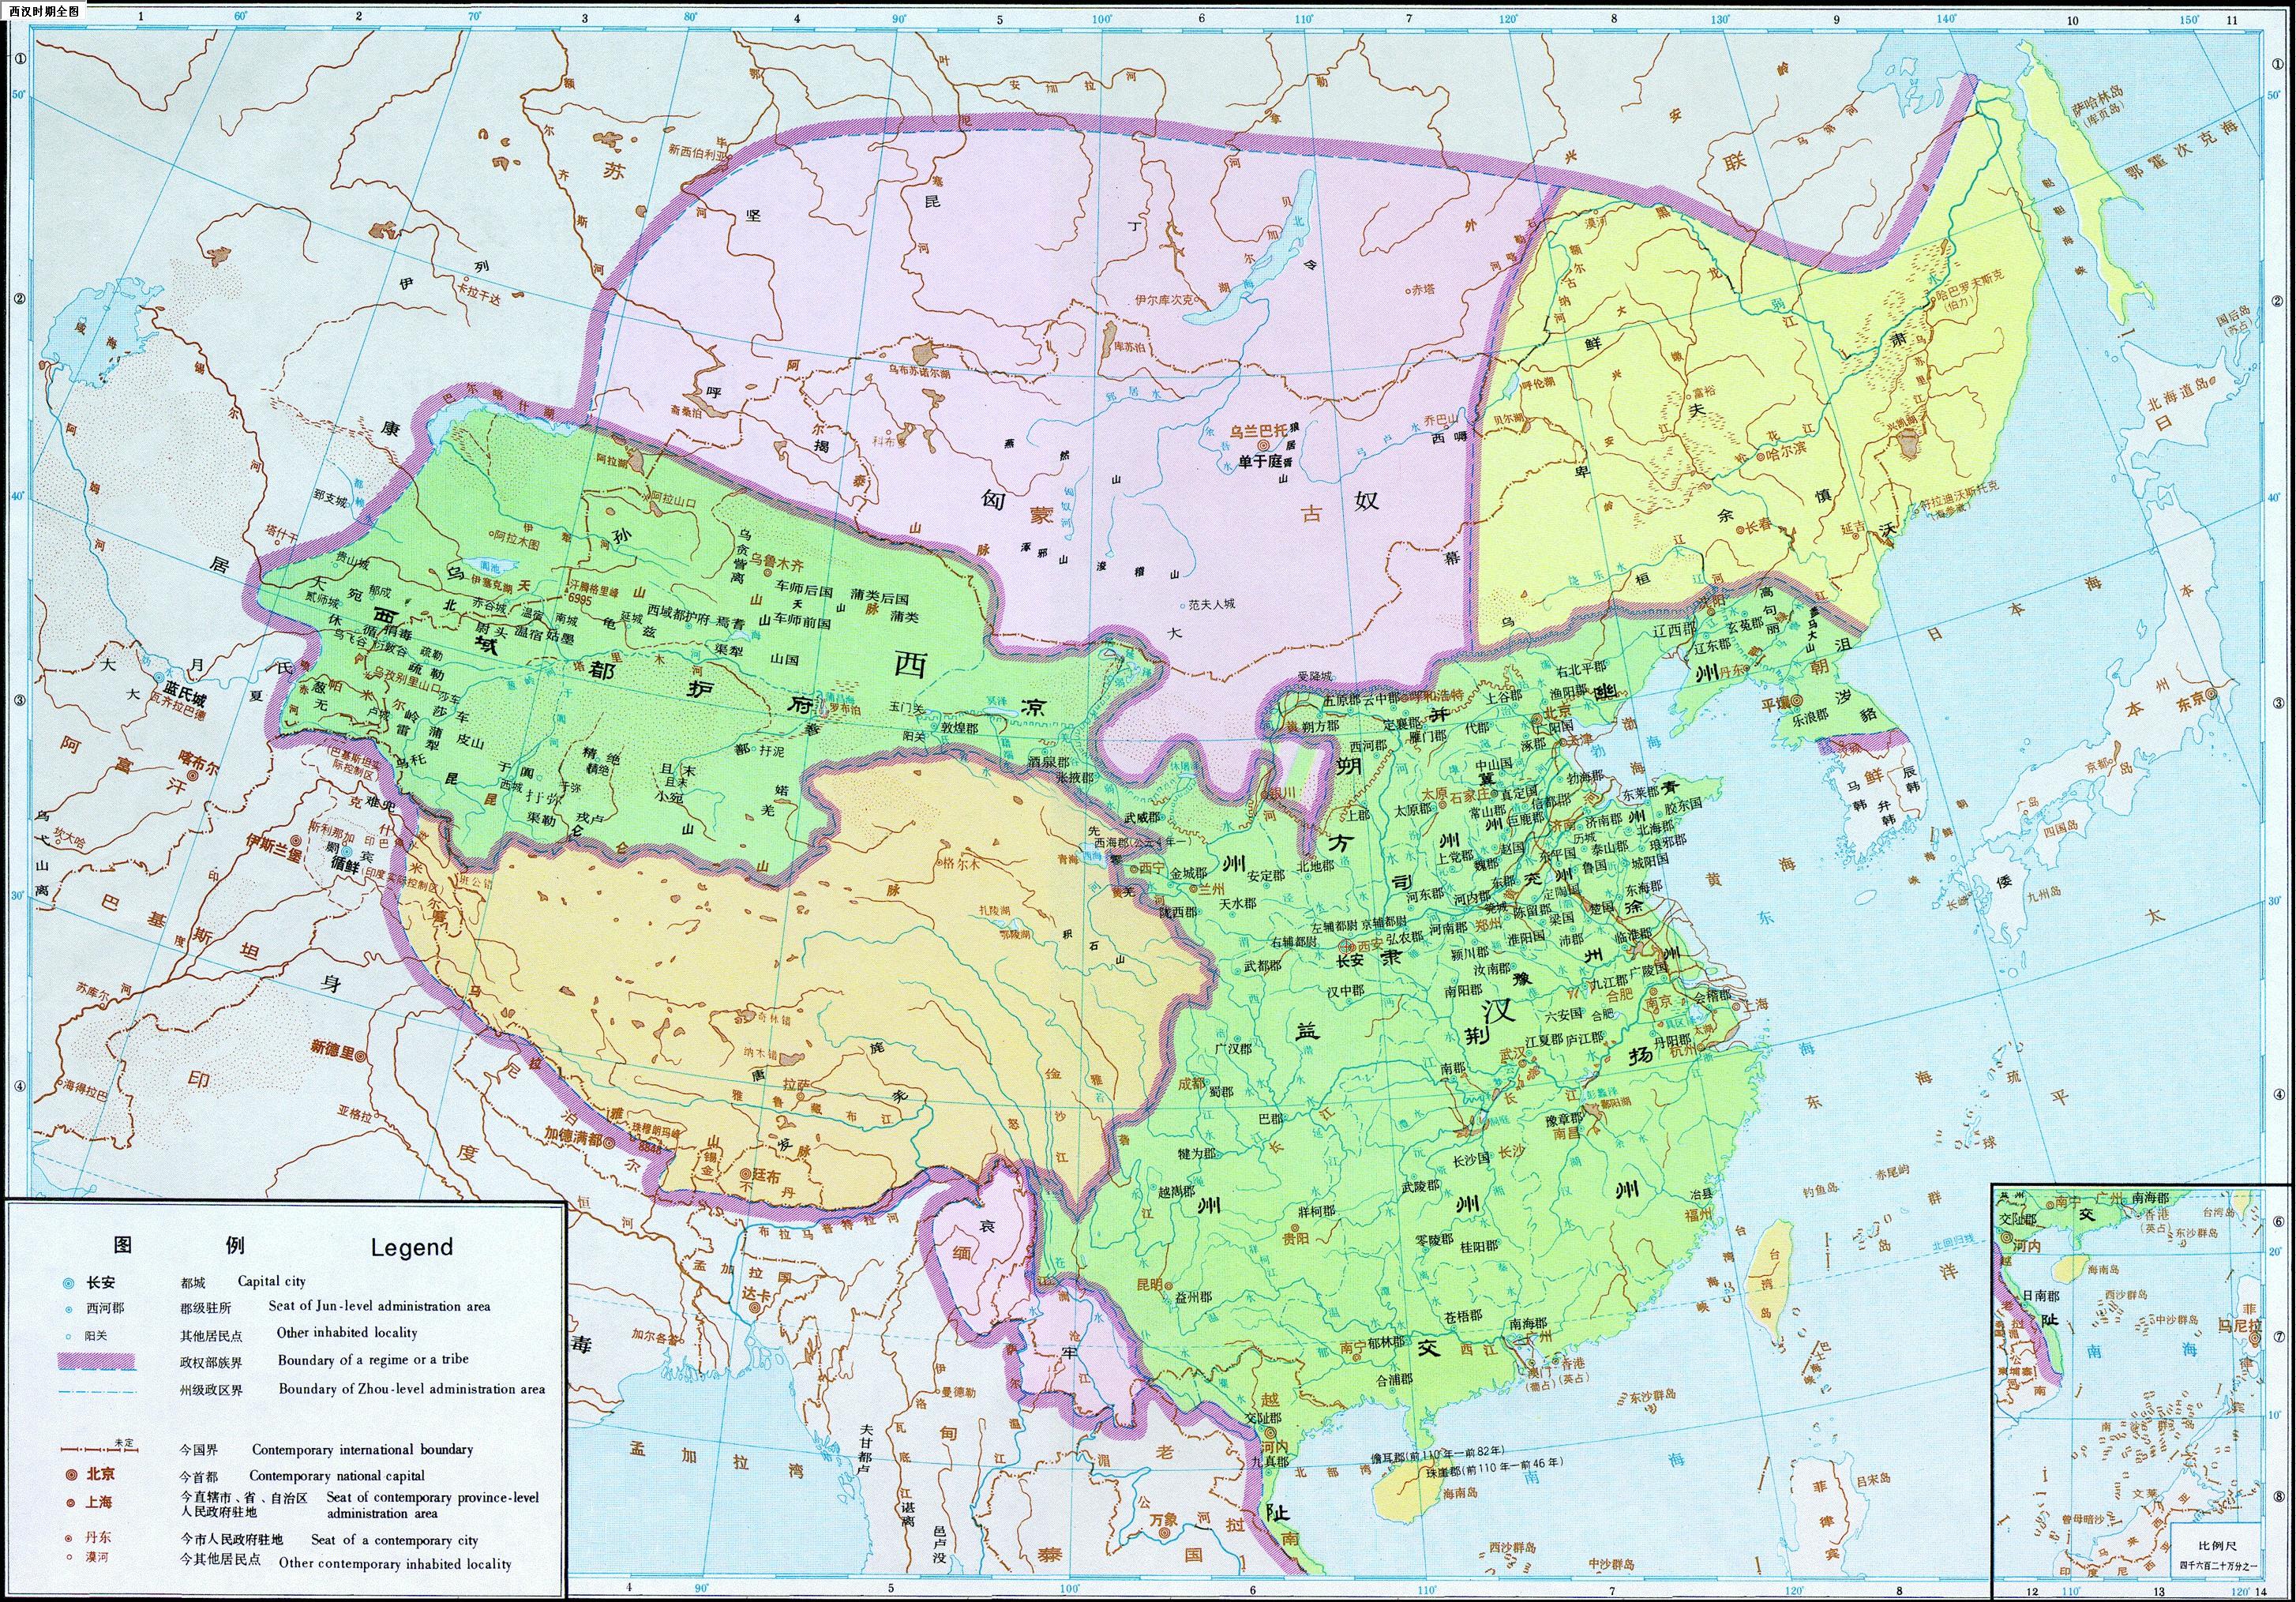 经过汉初文景之治,西汉在汉武帝时期对内加强中央集权,对外开拓疆域